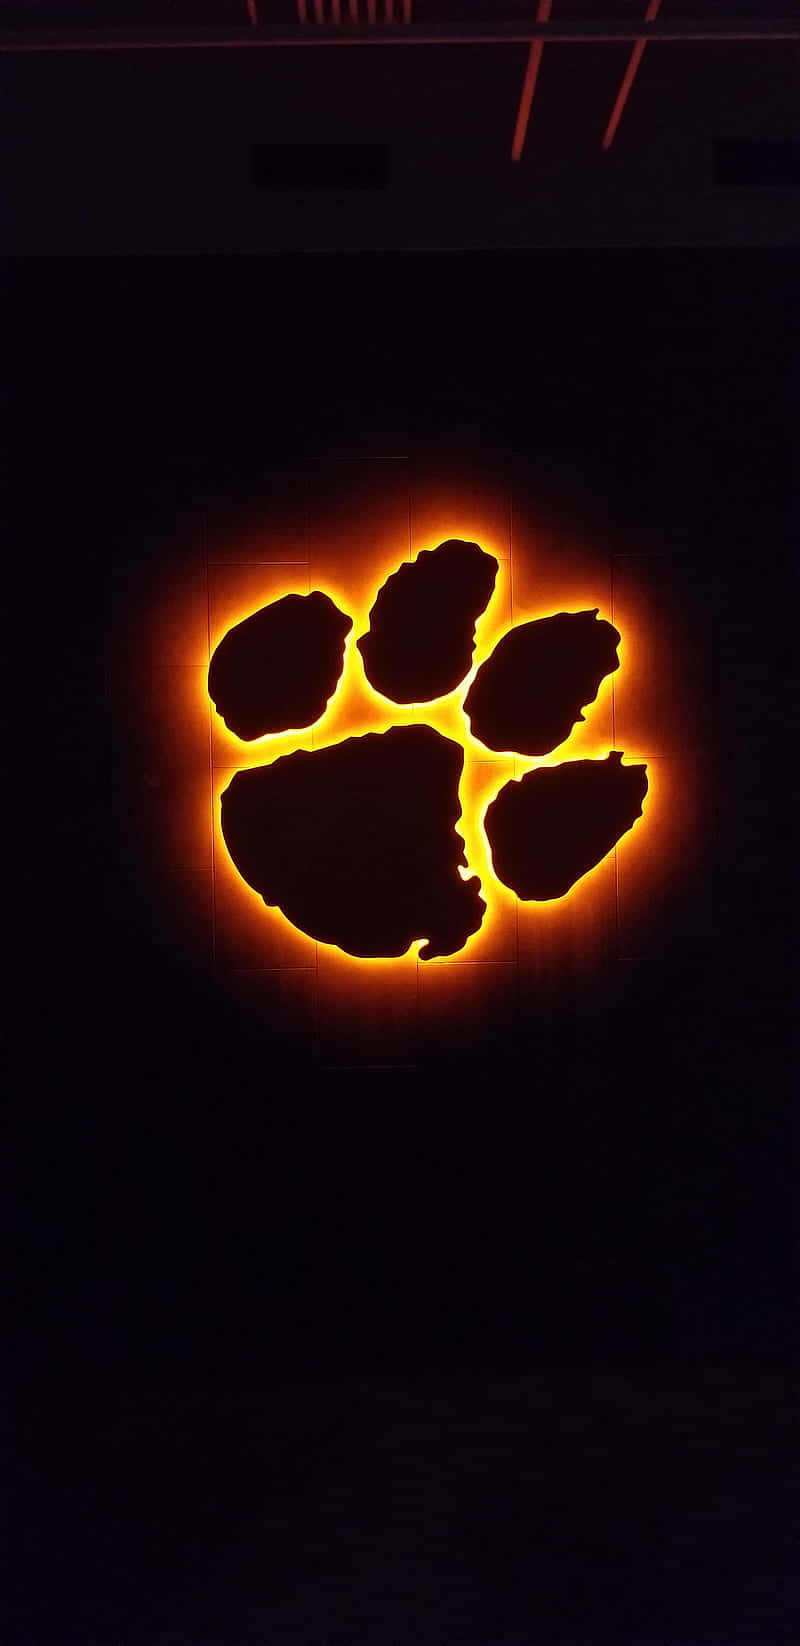 Einclemson Tigers Logo Leuchtet In Orange. Wallpaper